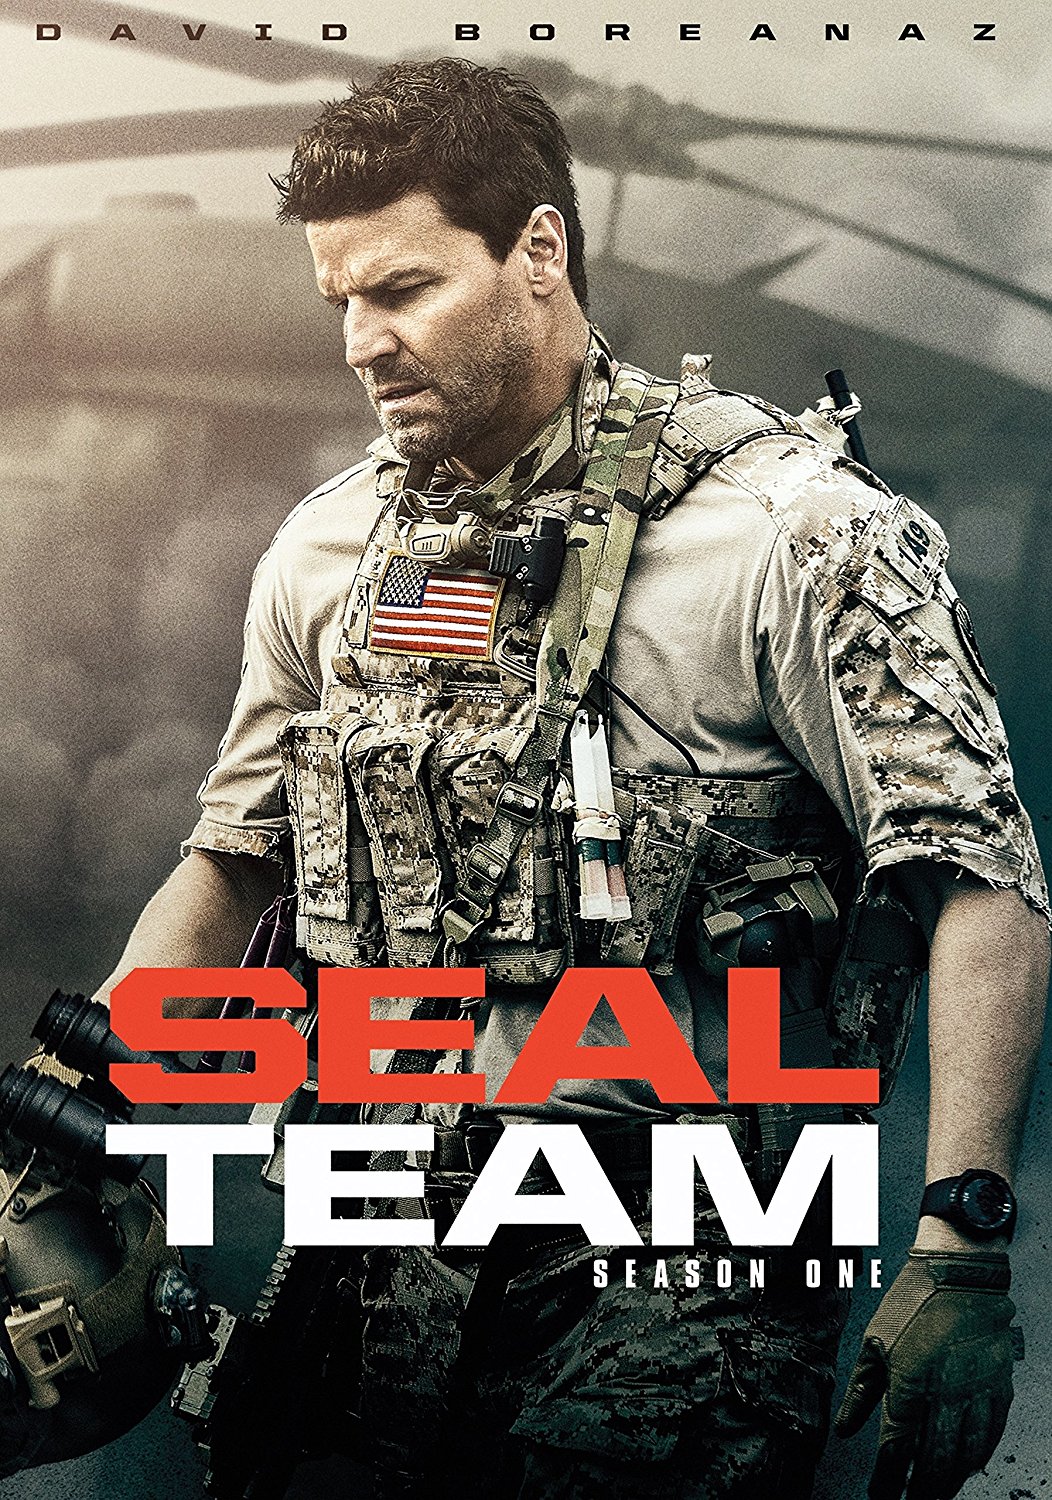 Fritid spade spænding Season 1 | SEAL Team Wiki | Fandom